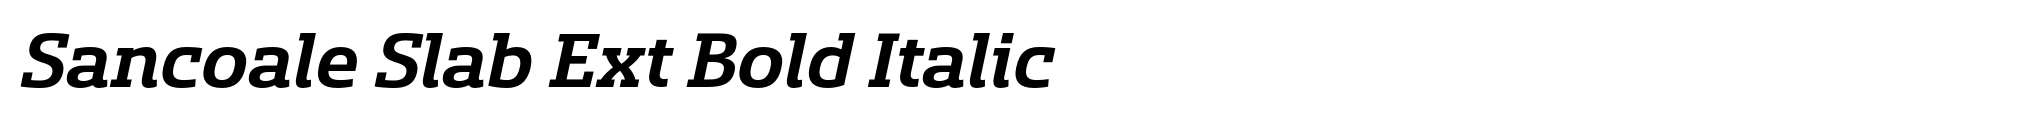 Sancoale Slab Ext Bold Italic image